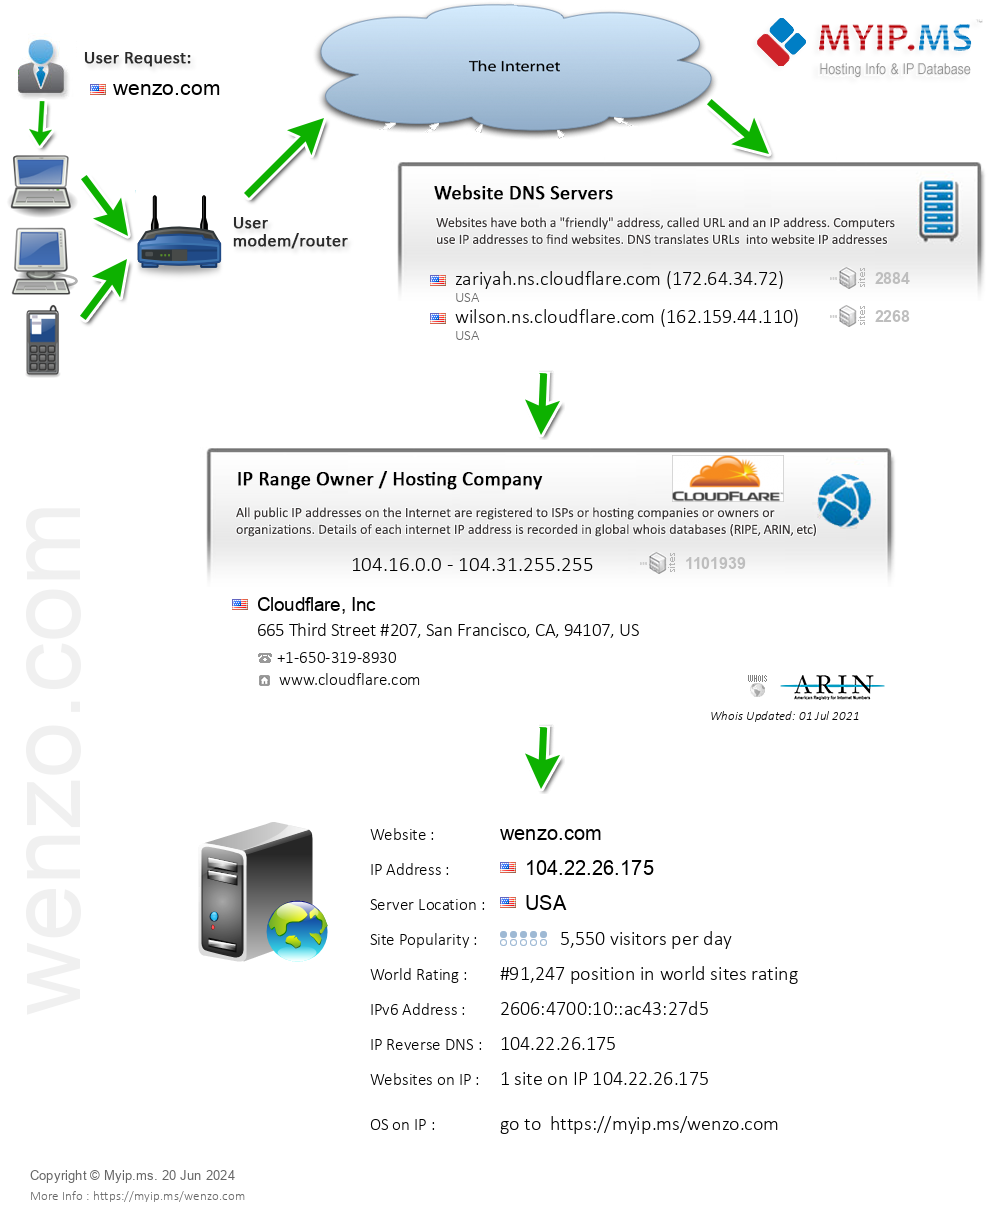 Wenzo.com - Website Hosting Visual IP Diagram